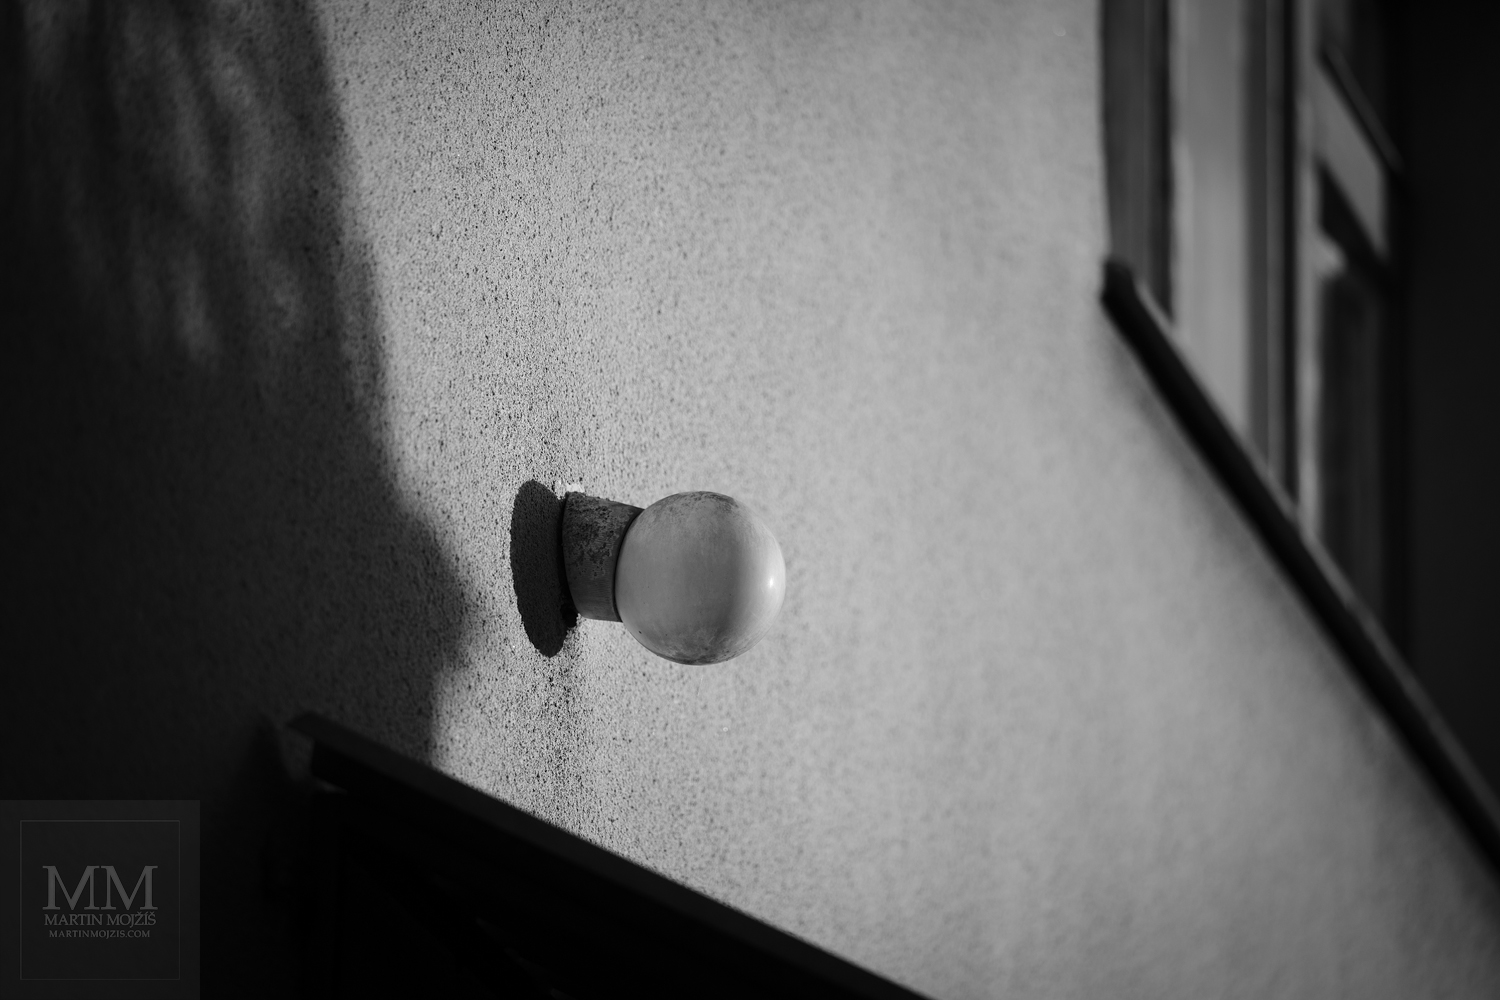 Lampa na stěně domu ve světle slunečních paprsků. Umělecká černobílá fotografie s názvem LAMPA A SLUNCE. Fotograf Martin Mojžíš.